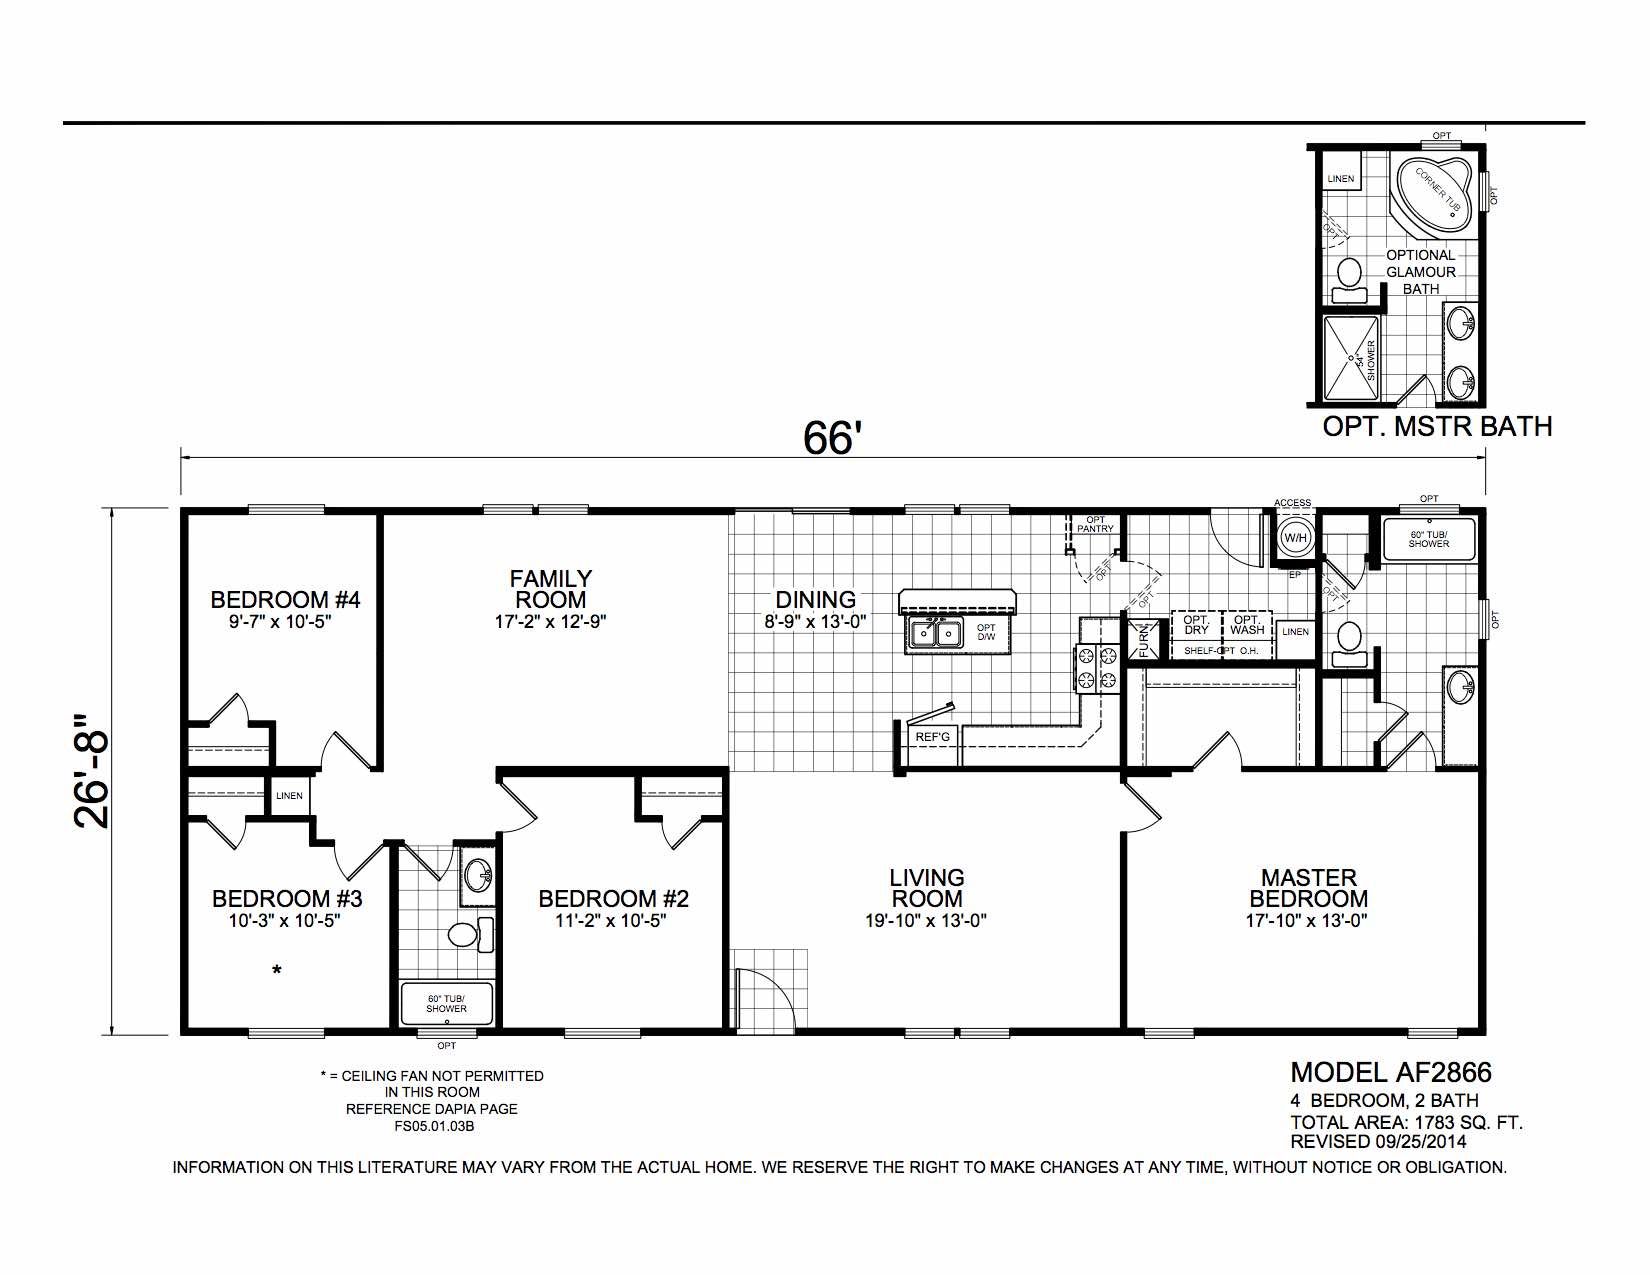 Homes Direct Modular Homes - Model AF2866 - Floorplan